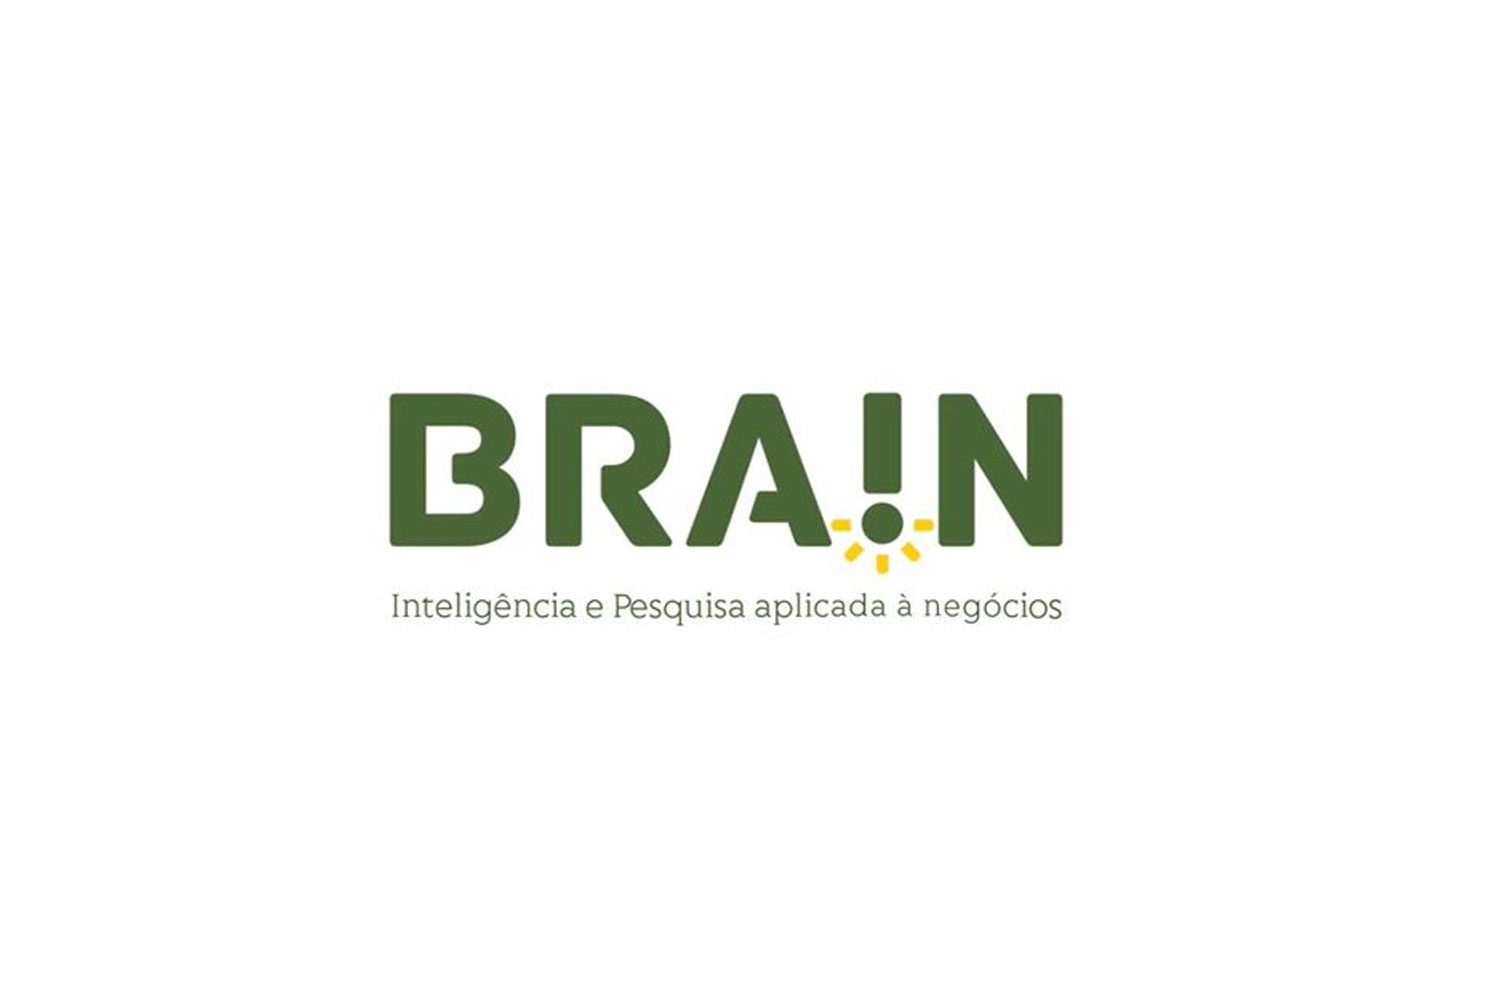 logos_clientes_site_brain-inteligencia